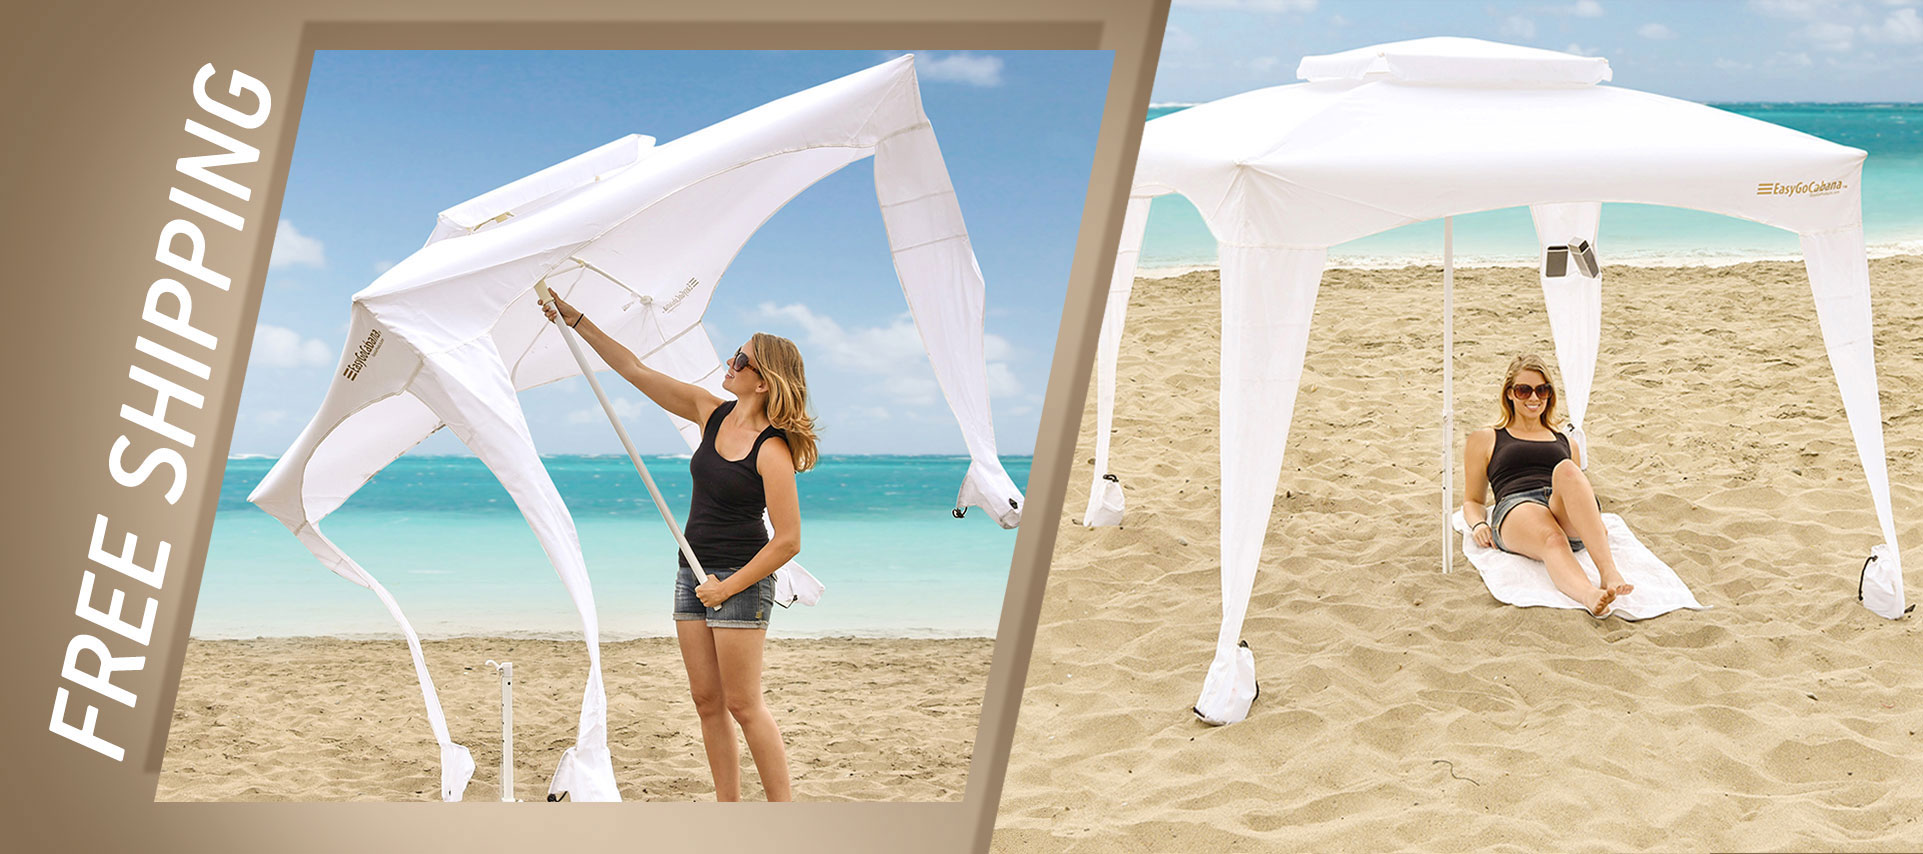 EasyGO Products 5 Easygoshade Portable Sun Shade Umbrella/Tripod Base Beach ... 